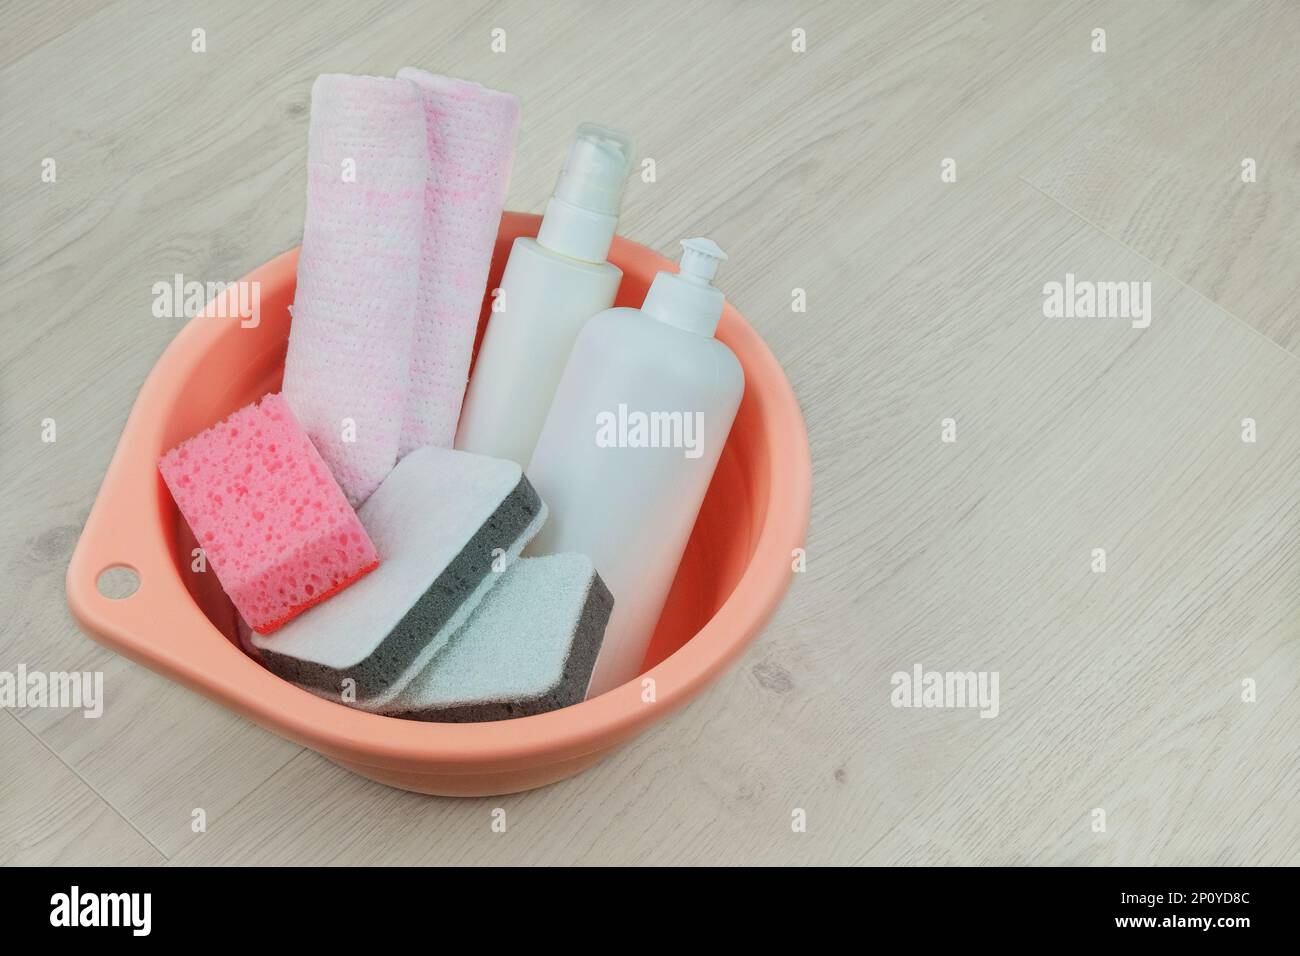 Reinigungskonzept. Waschmittelflaschen mit Waschlappen für die allgemeine Ordnung und Sauberkeit in einem pinkfarbenen Waschbecken auf Holzhintergrund. Speicherplatz kopieren. Stockfoto